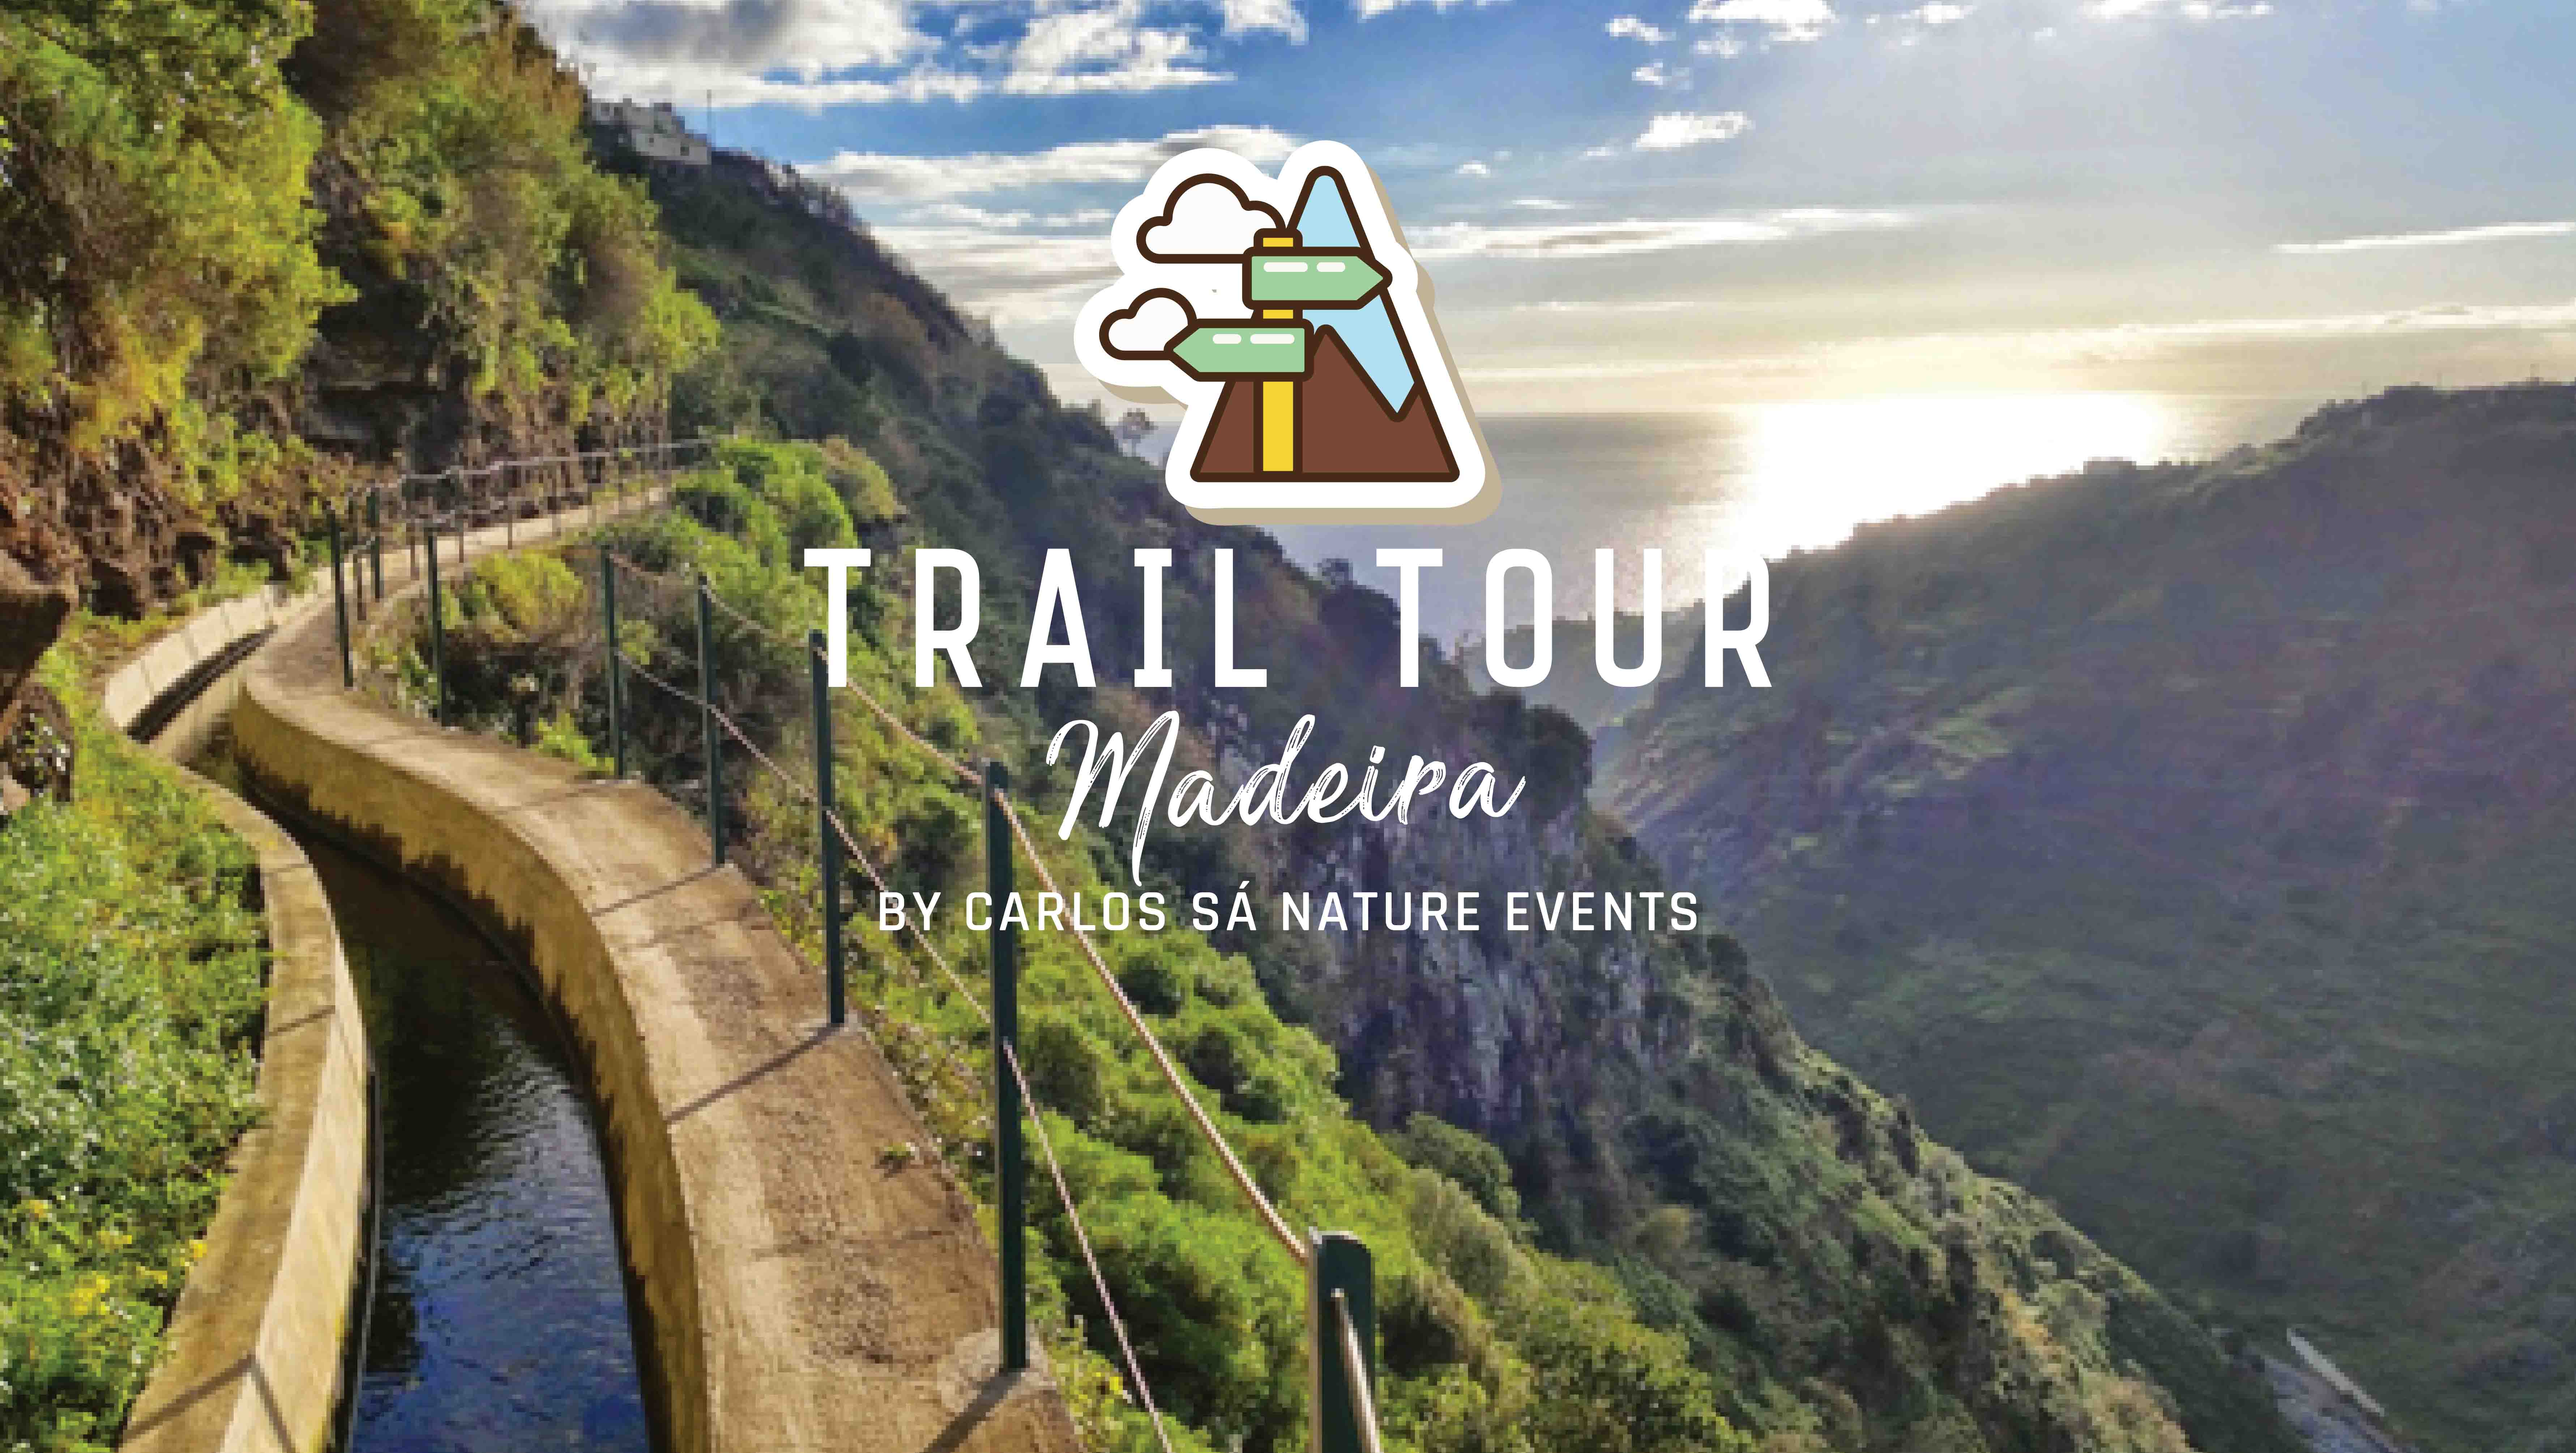 Trail Tour Madeira